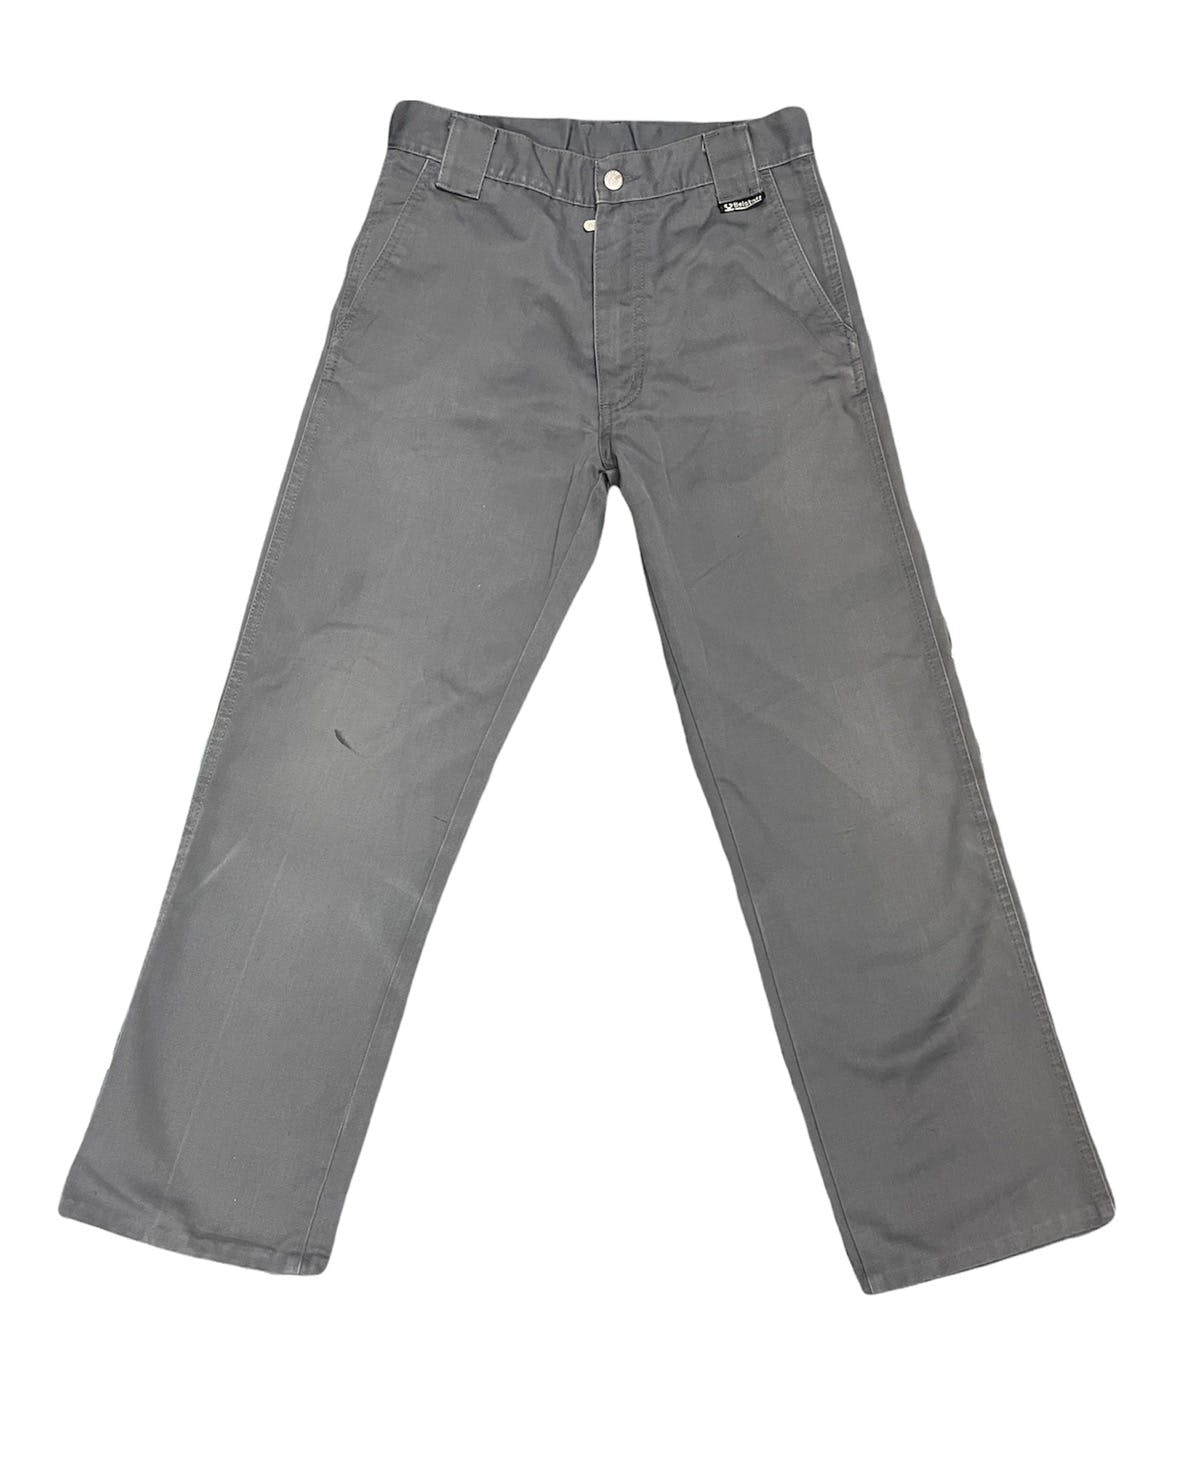 Belstaff cotton pants - 1